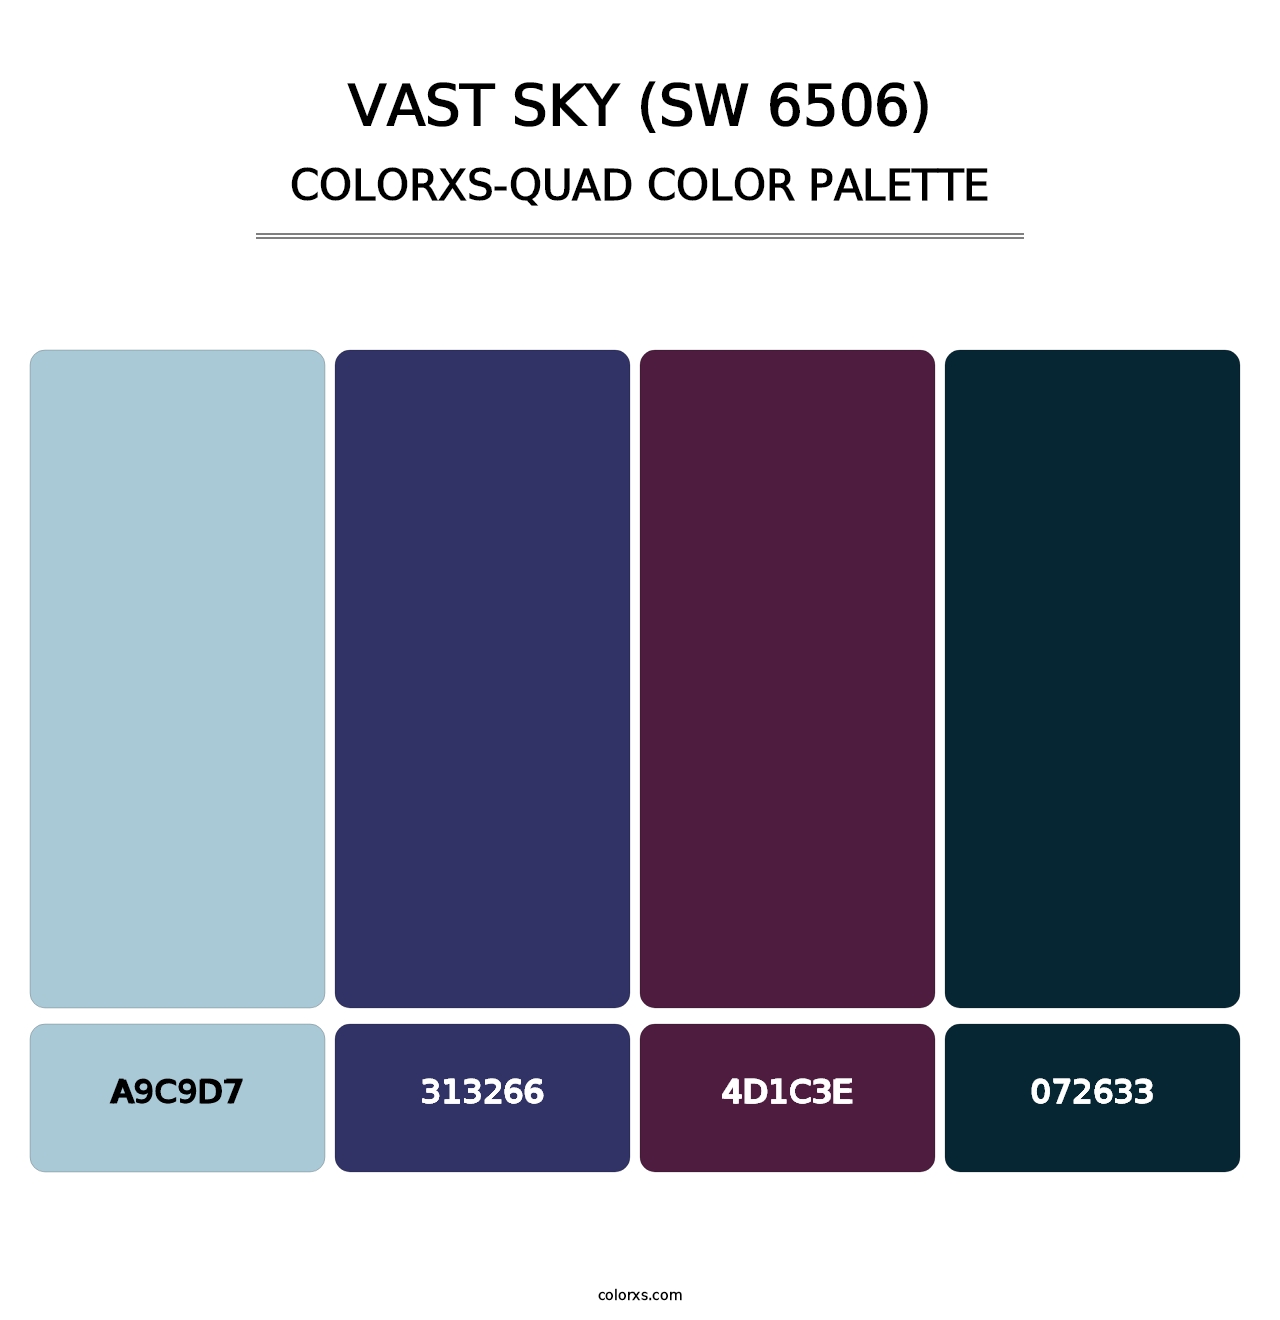 Vast Sky (SW 6506) - Colorxs Quad Palette